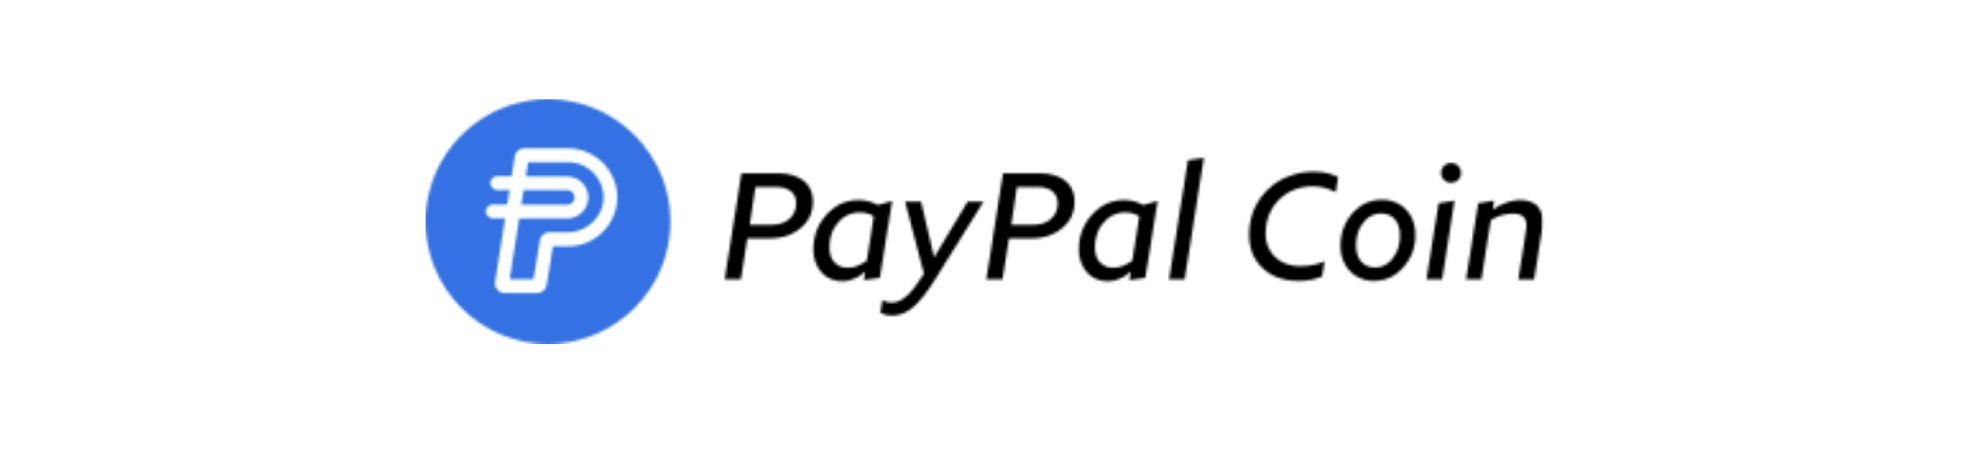 Возможный вариант криптовалюты PayPal